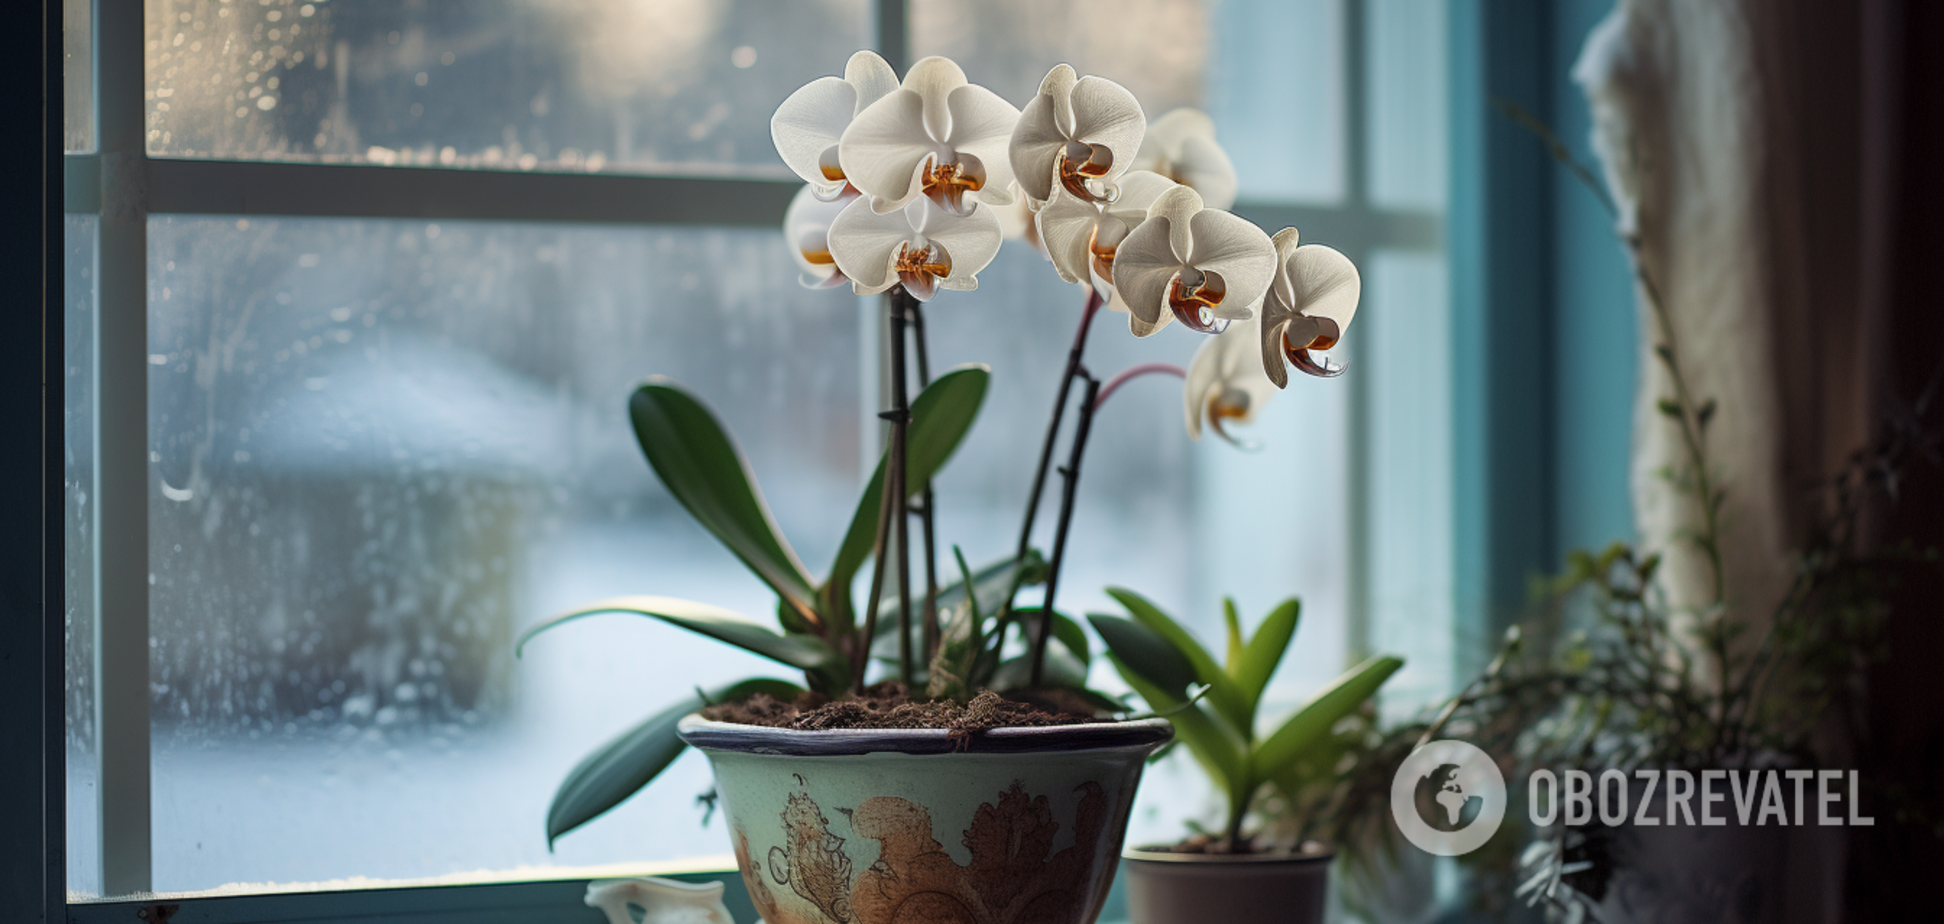 Як зробити, щоб орхідея цвіла весь рік: корейський спосіб 